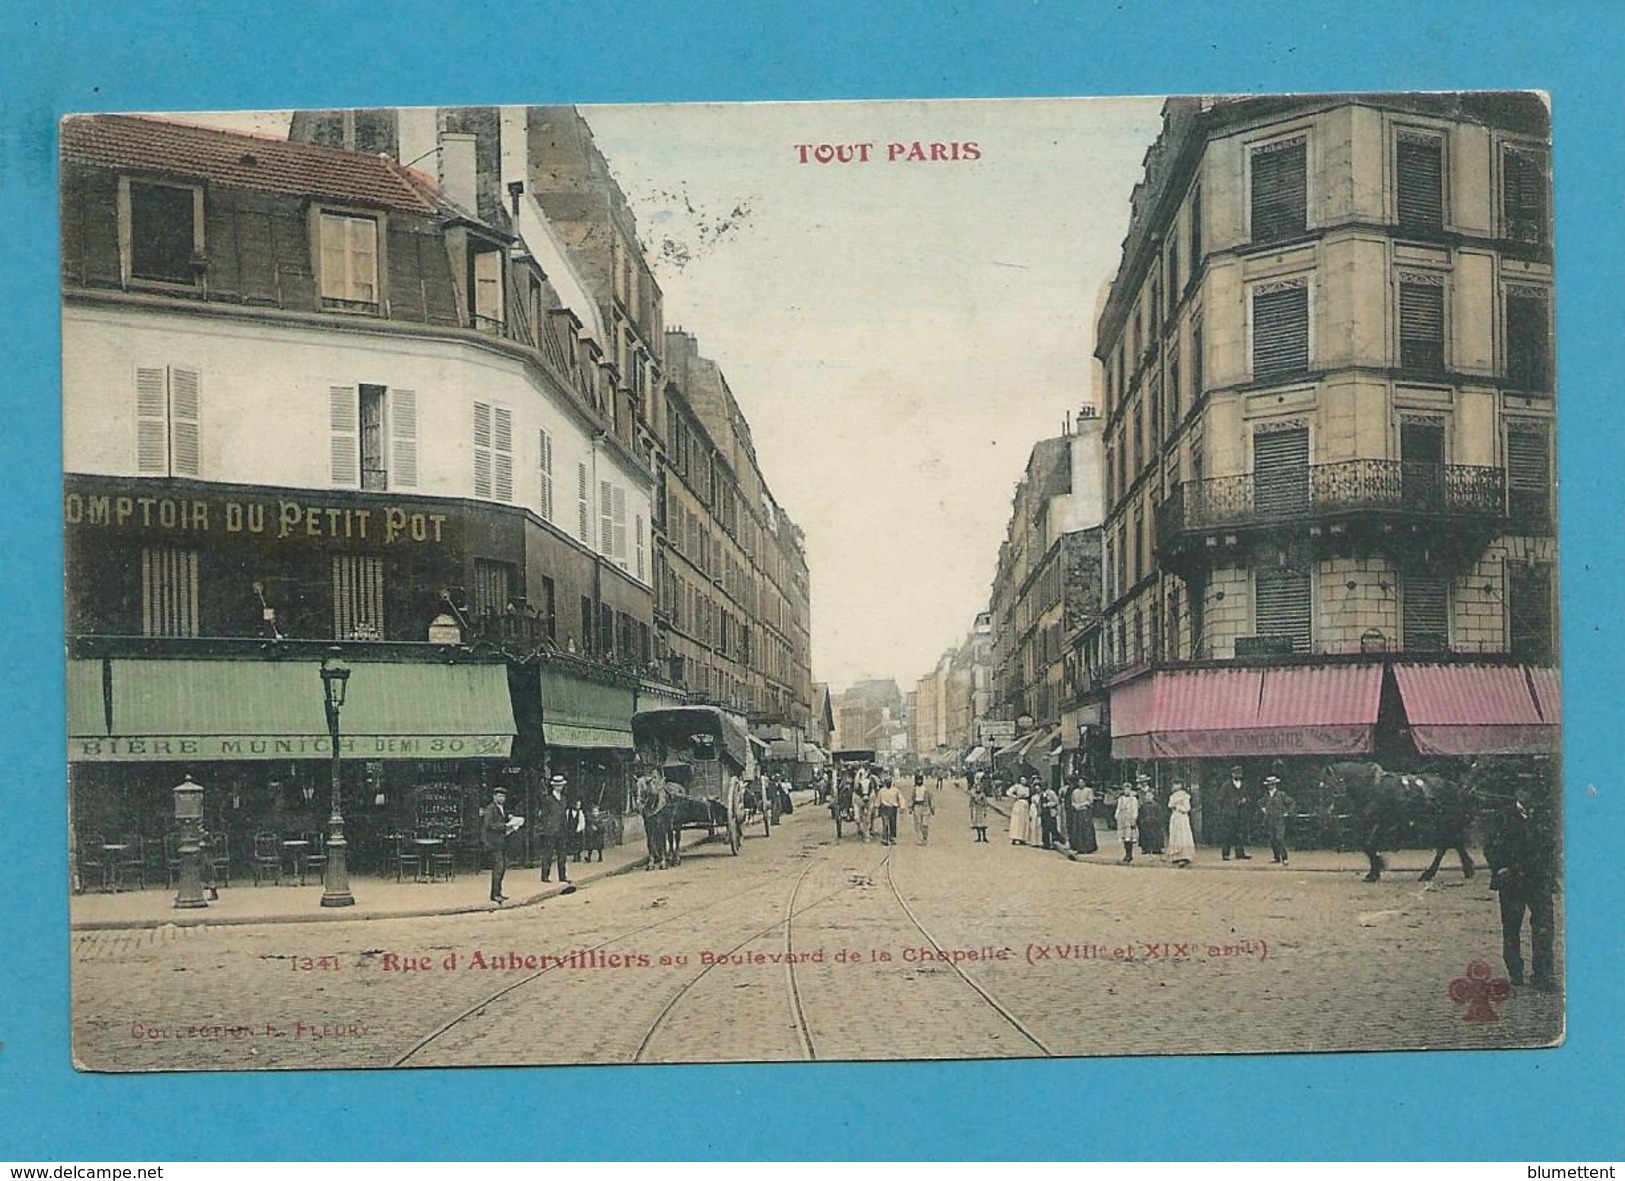 CPA TOUT PARIS 1341 - Rue D'Aubervilliers (XVIIIème Arrt.) Ed. FLEURY - Paris (18)